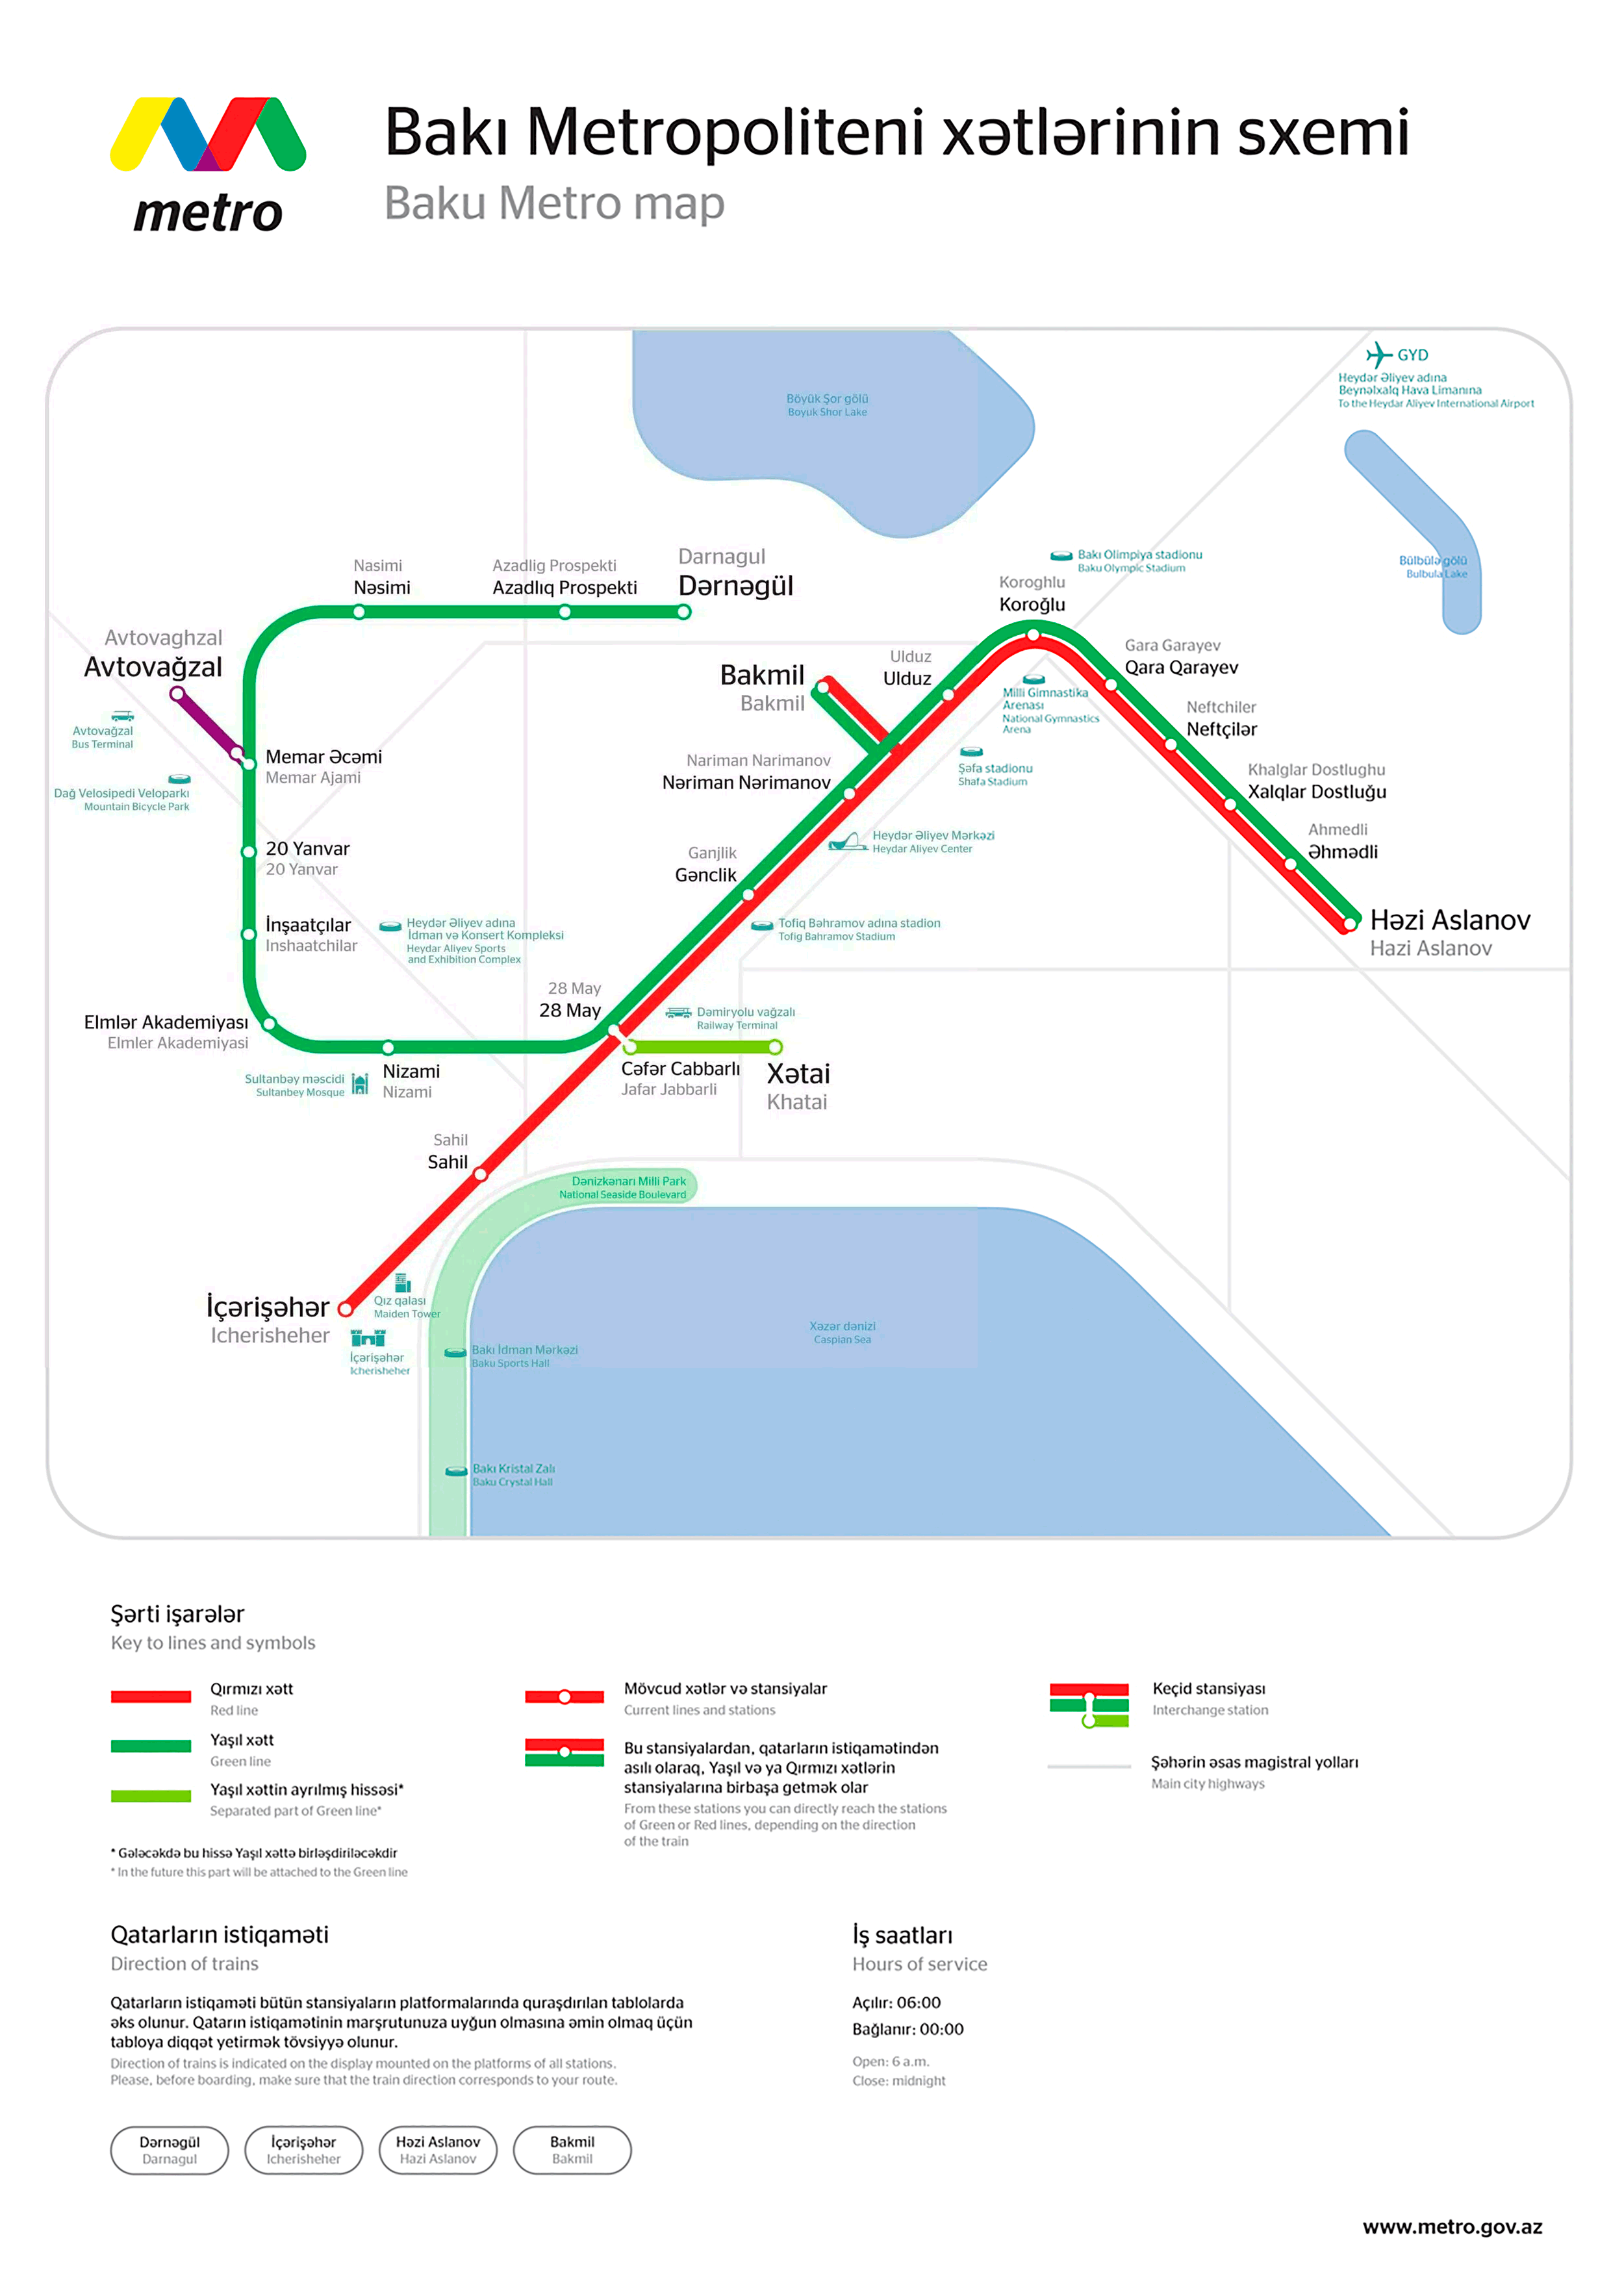 Bakun metro kartta.